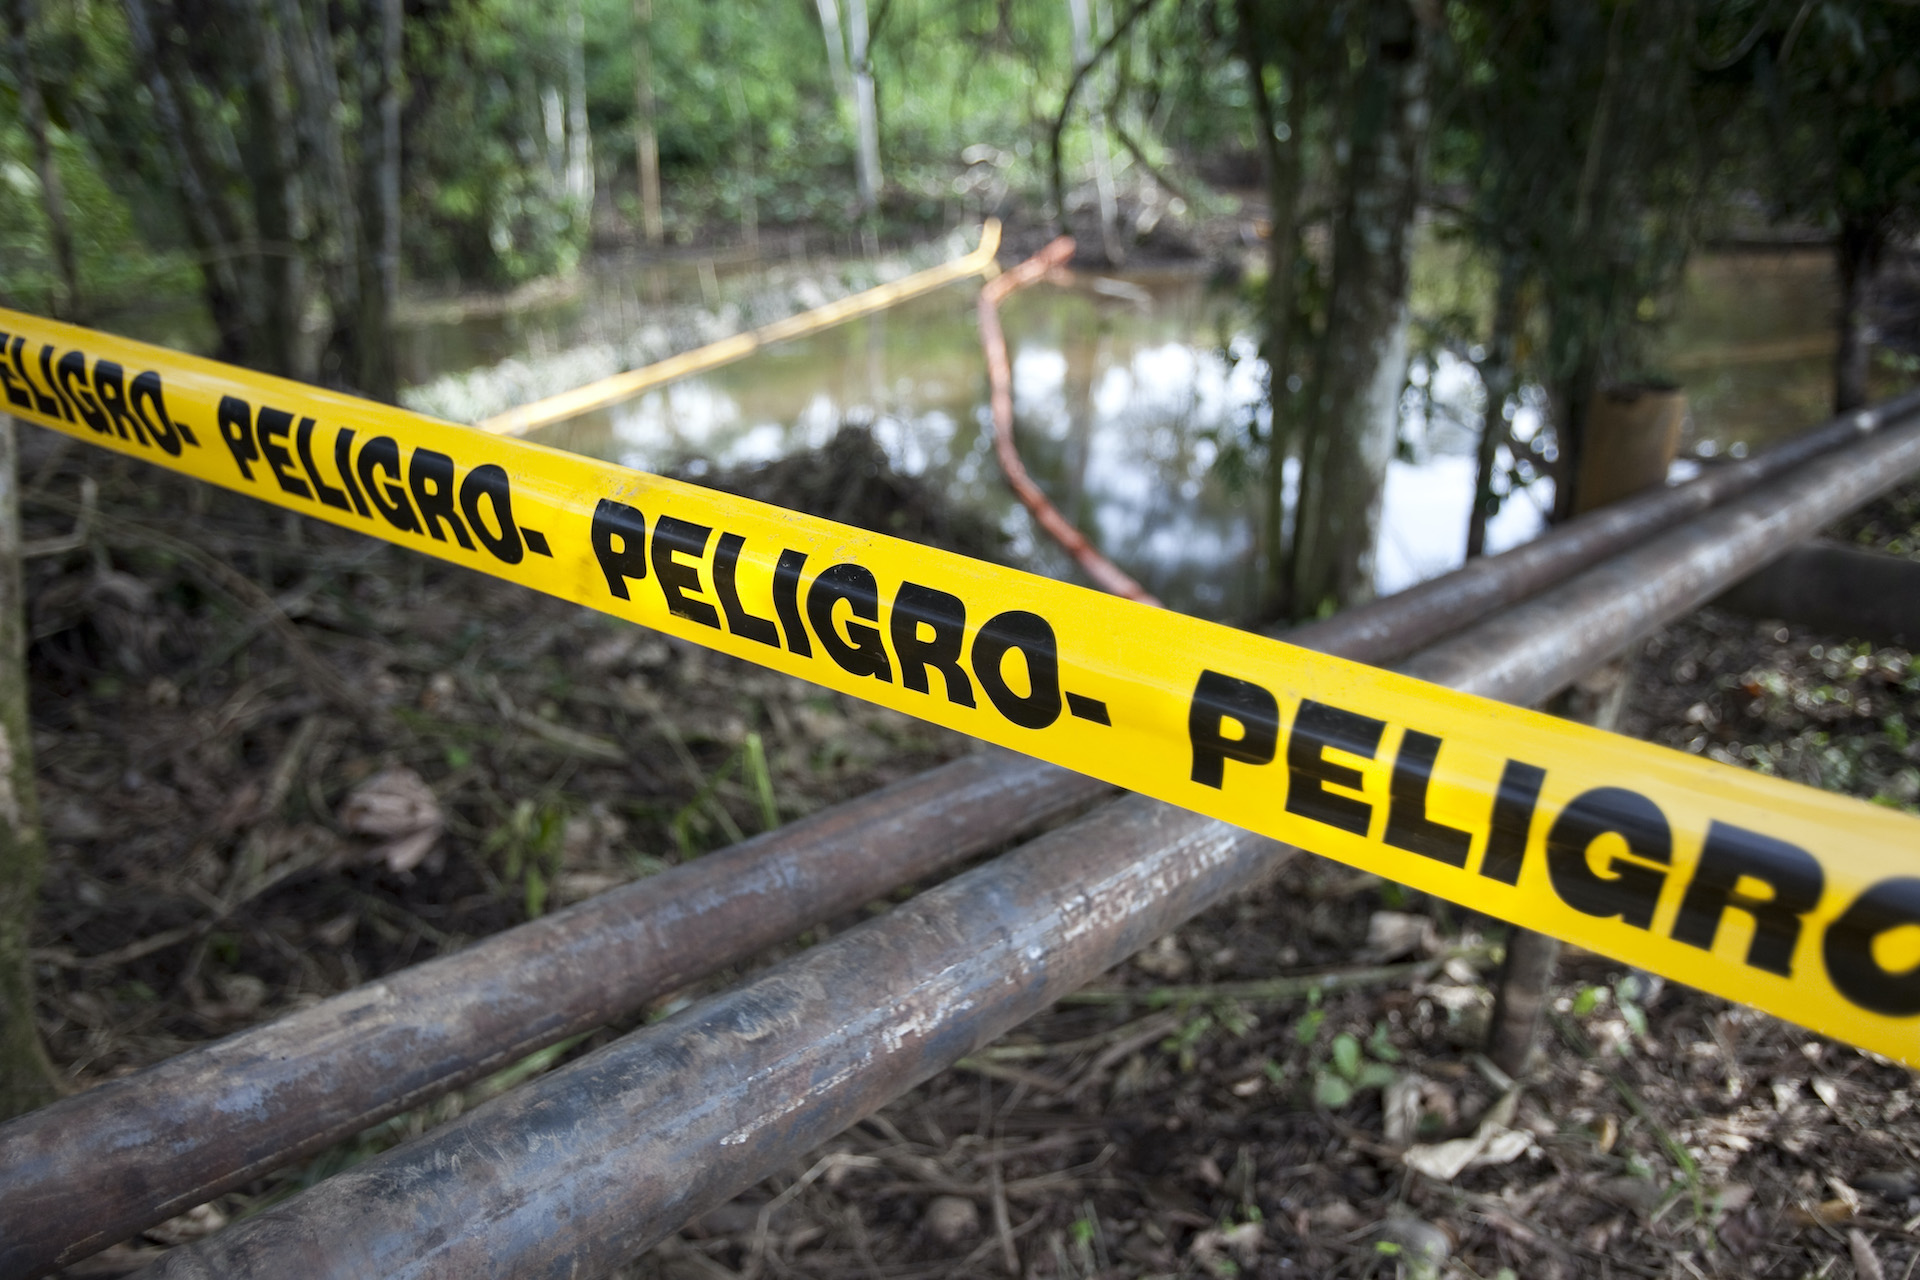 Oil spill in Ecuador